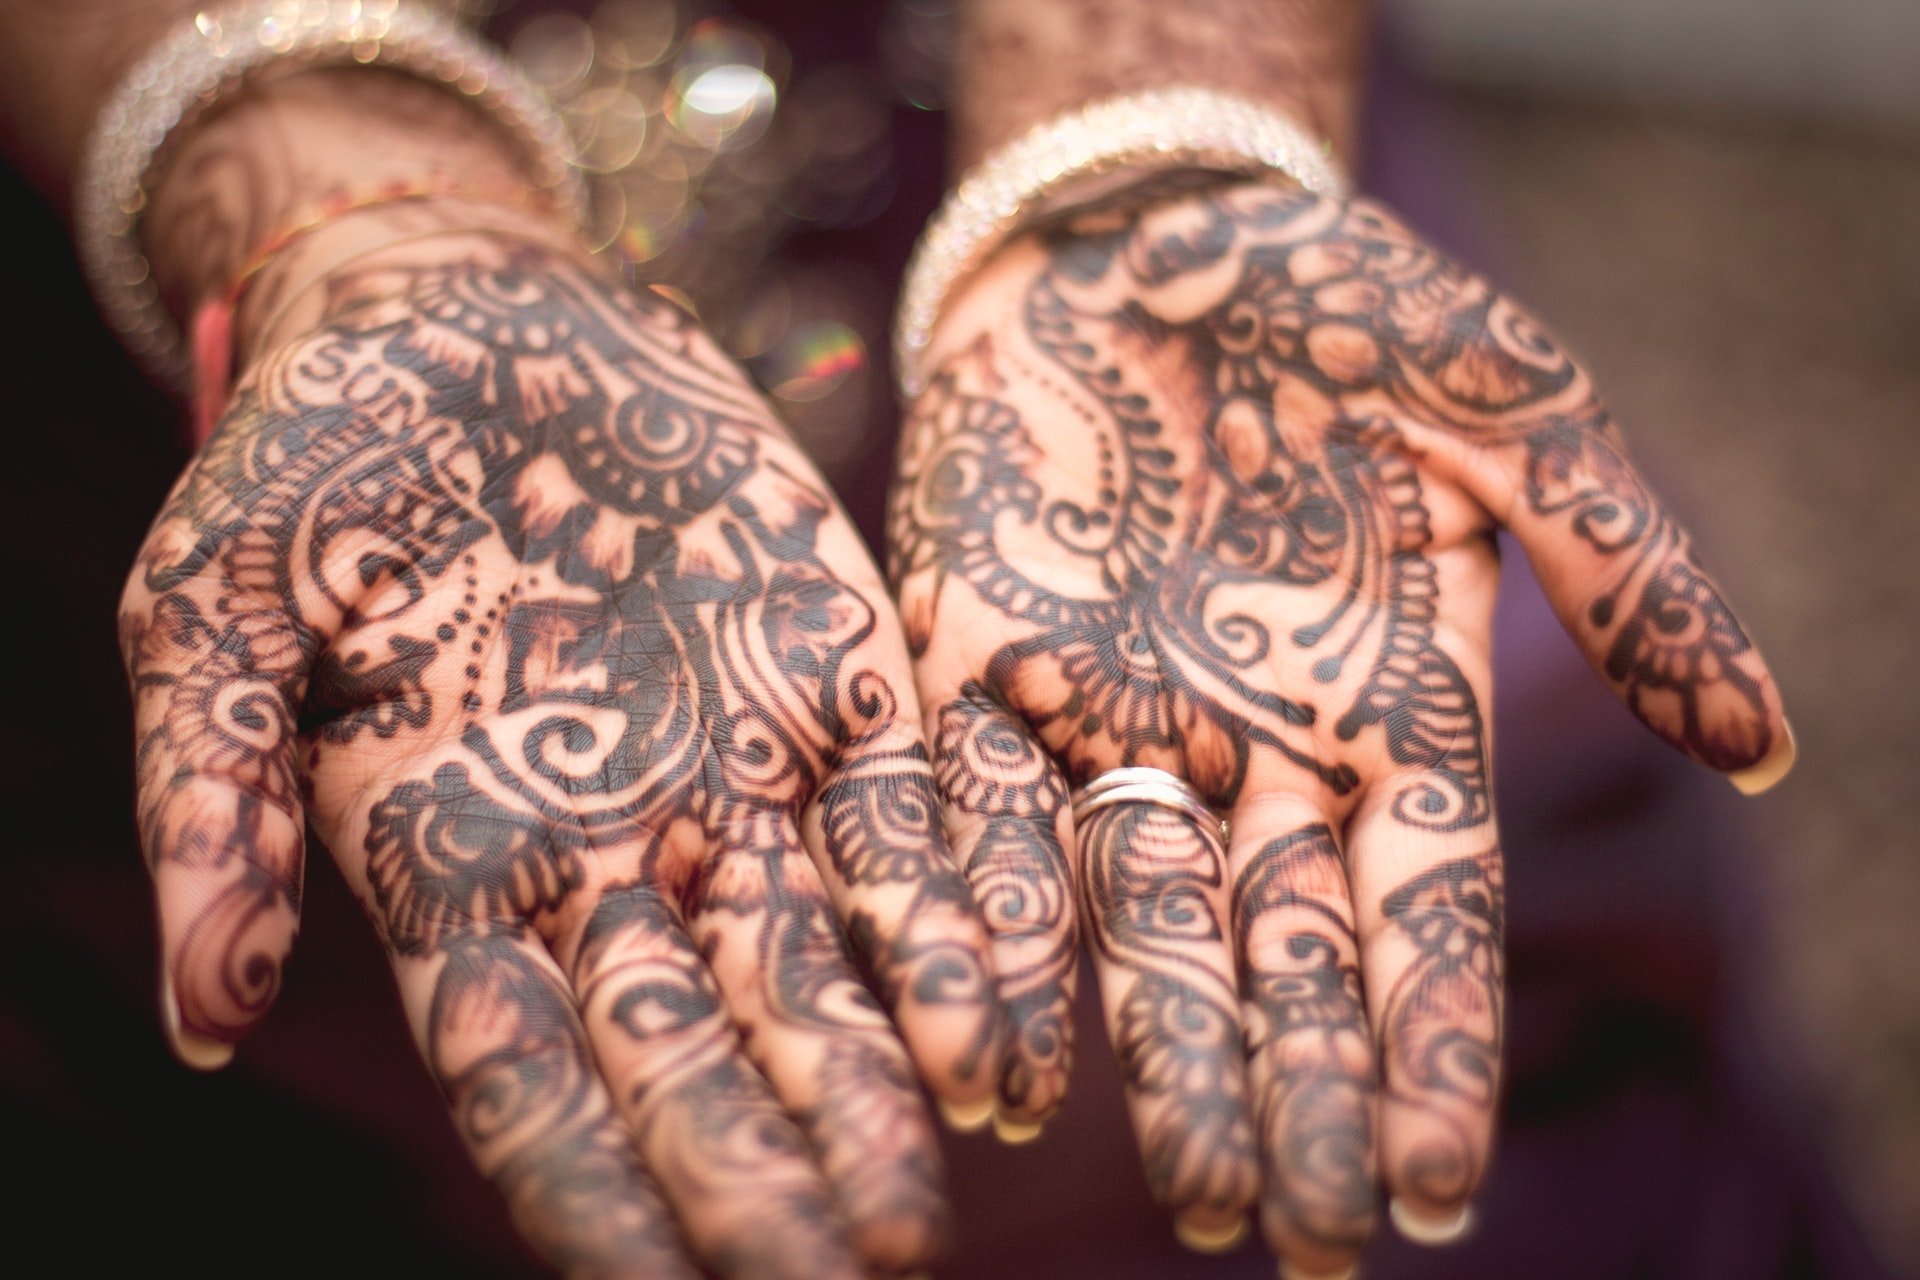 Des mains pleines de tatouages  | Source: unsplash